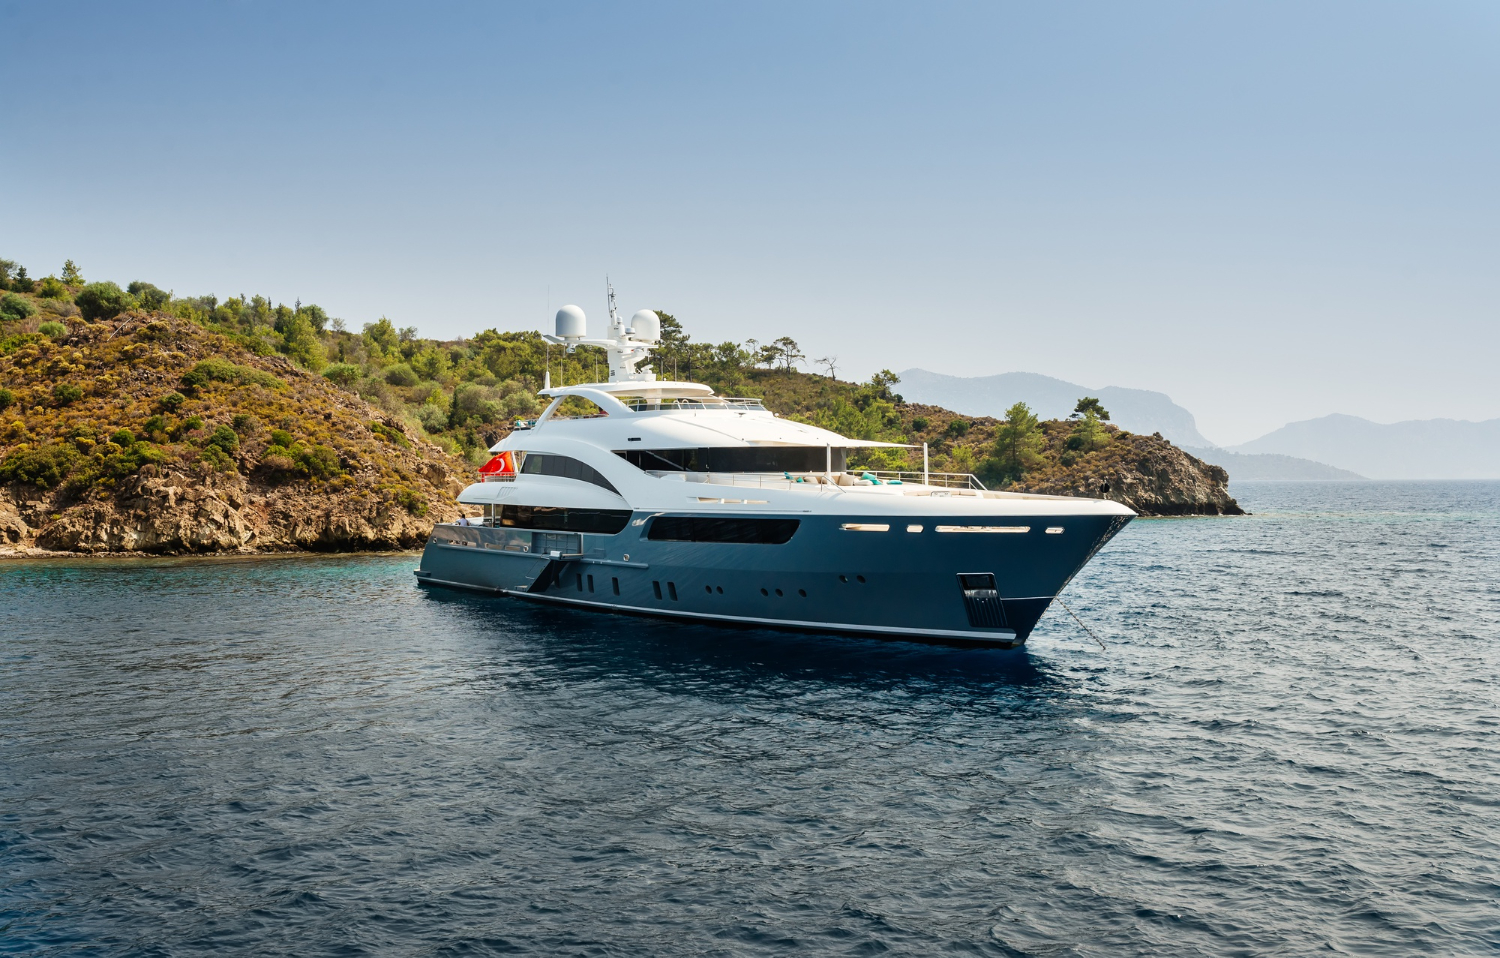 luxury-big-yacht-stay-sea-around-island-background-sky